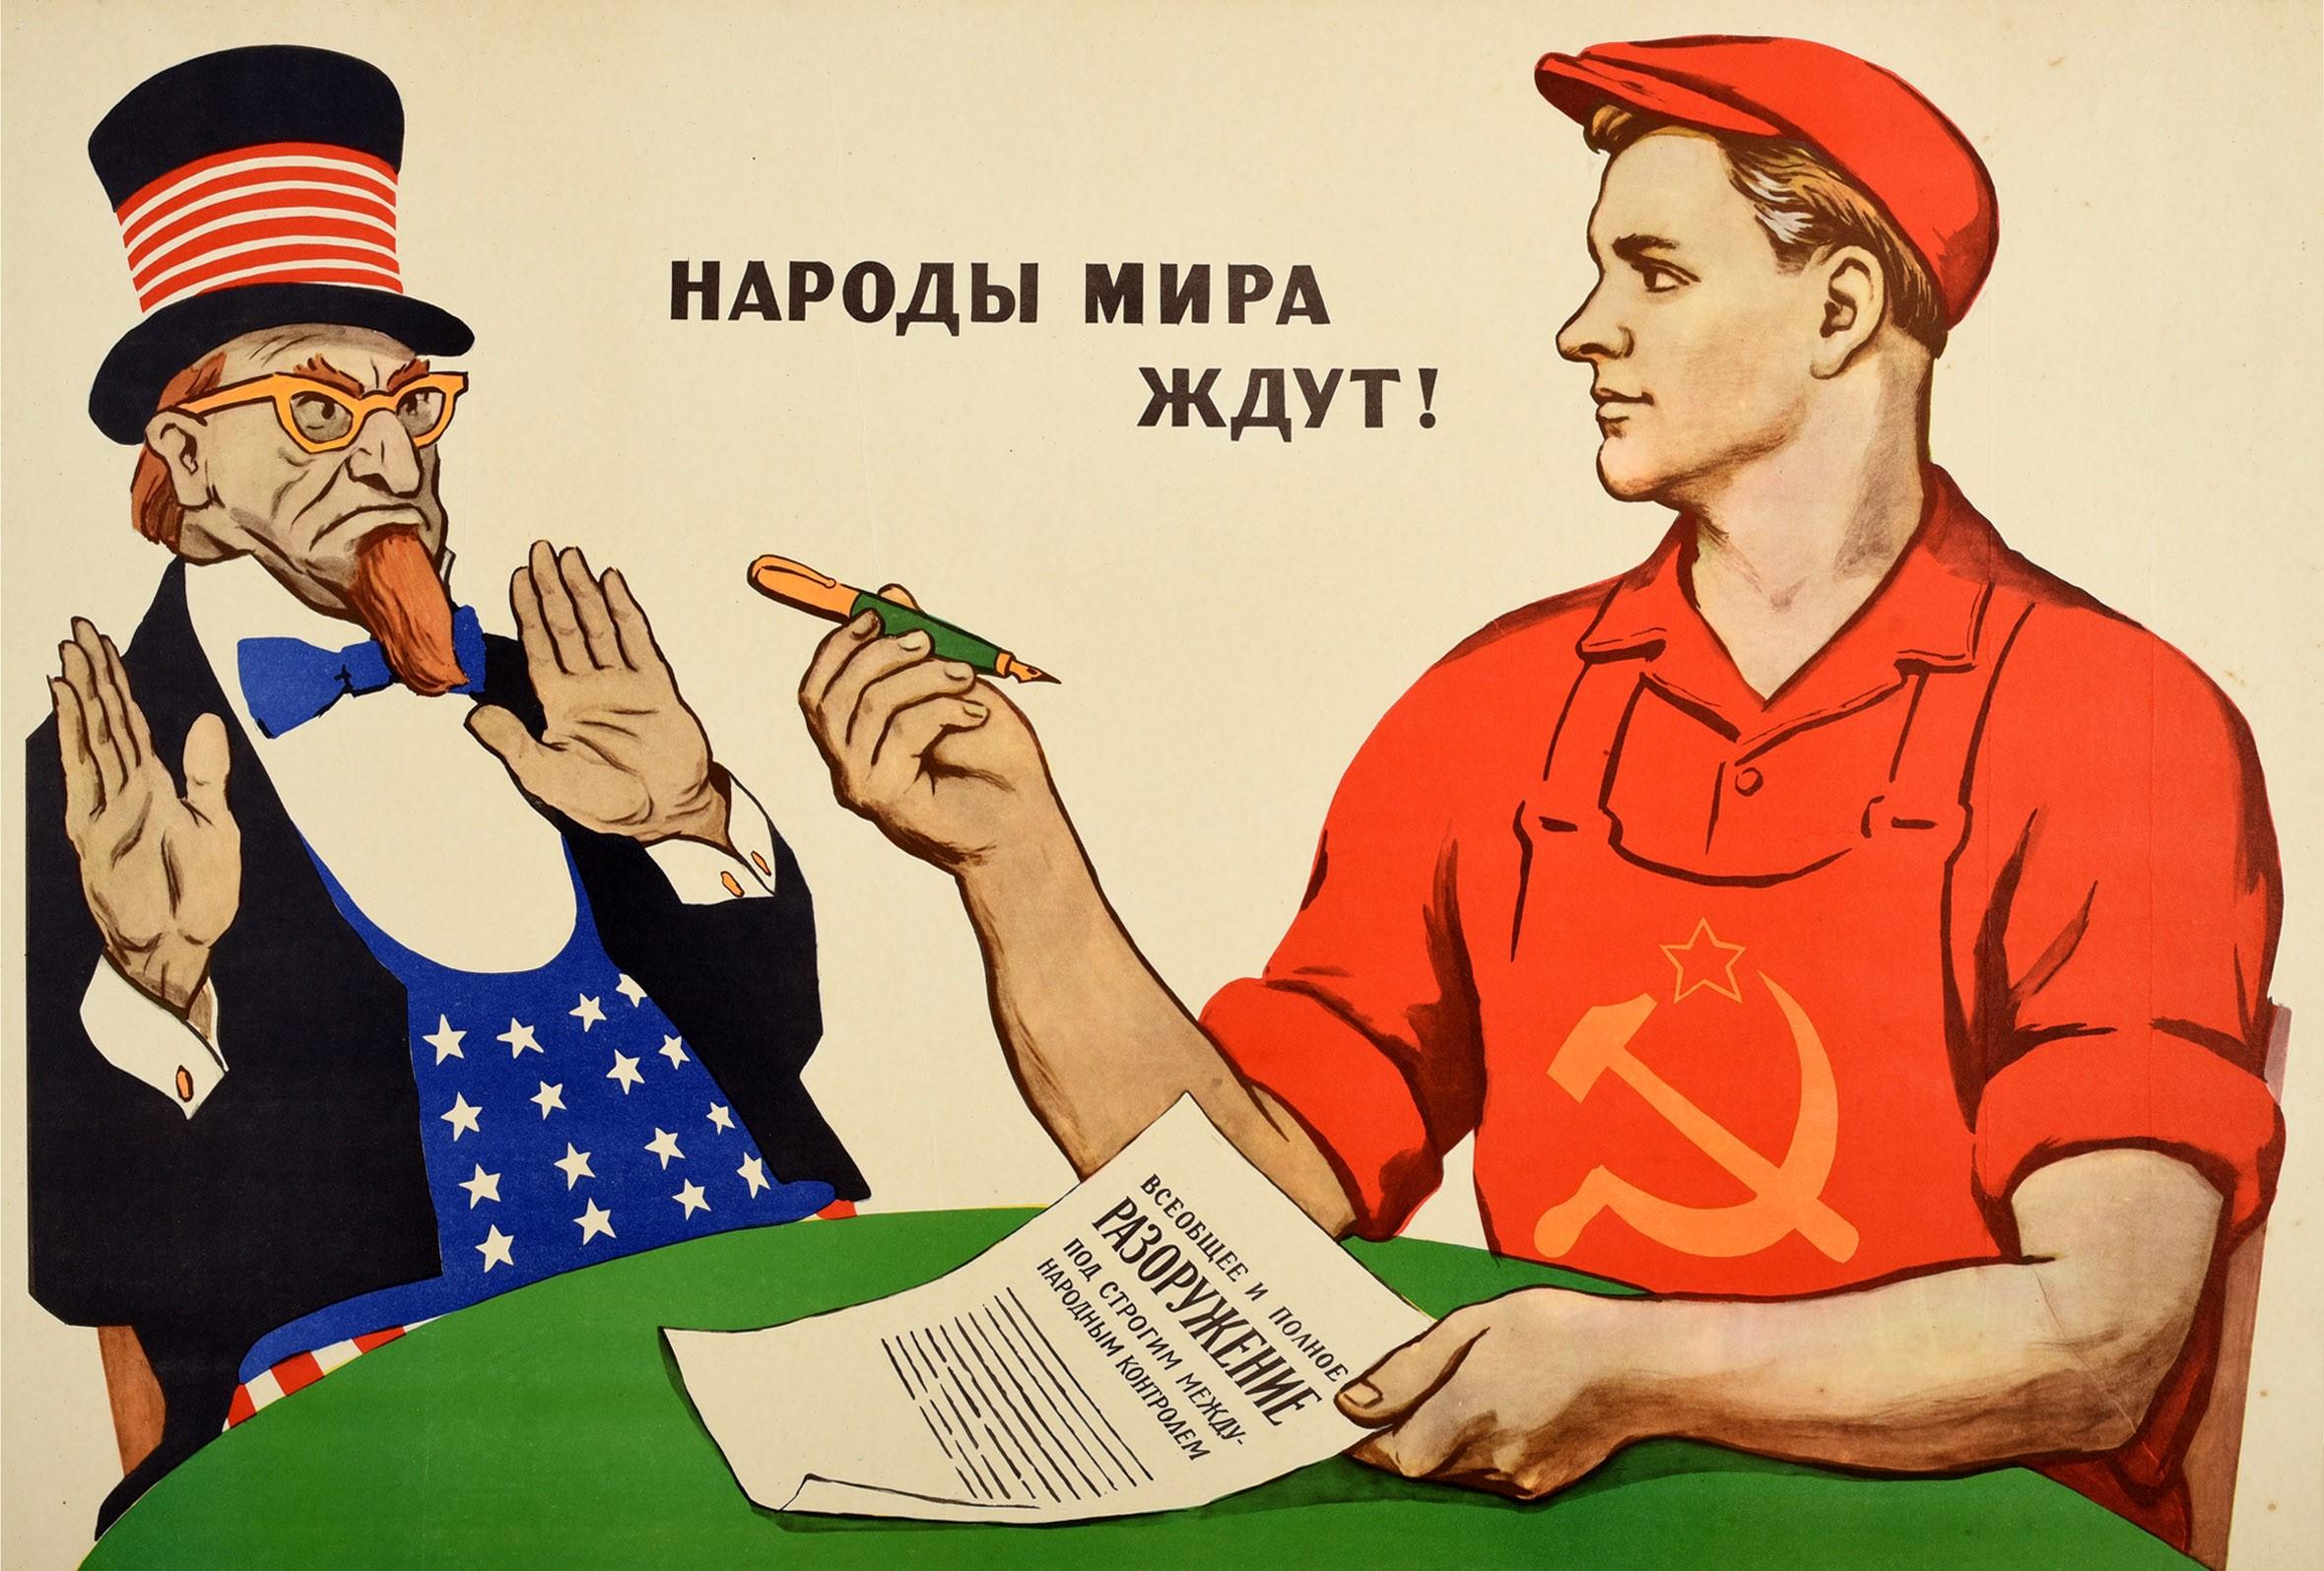 Originales sowjetisches Propagandaplakat aus der Zeit des Kalten Krieges - Das Volk der Welt wartet! ?????? ???? ????! - mit einem jungen Arbeiter mit dem sowjetischen Hammer- und Sichel-Emblem auf seinem roten Overall, der einen Stift hochhält, um